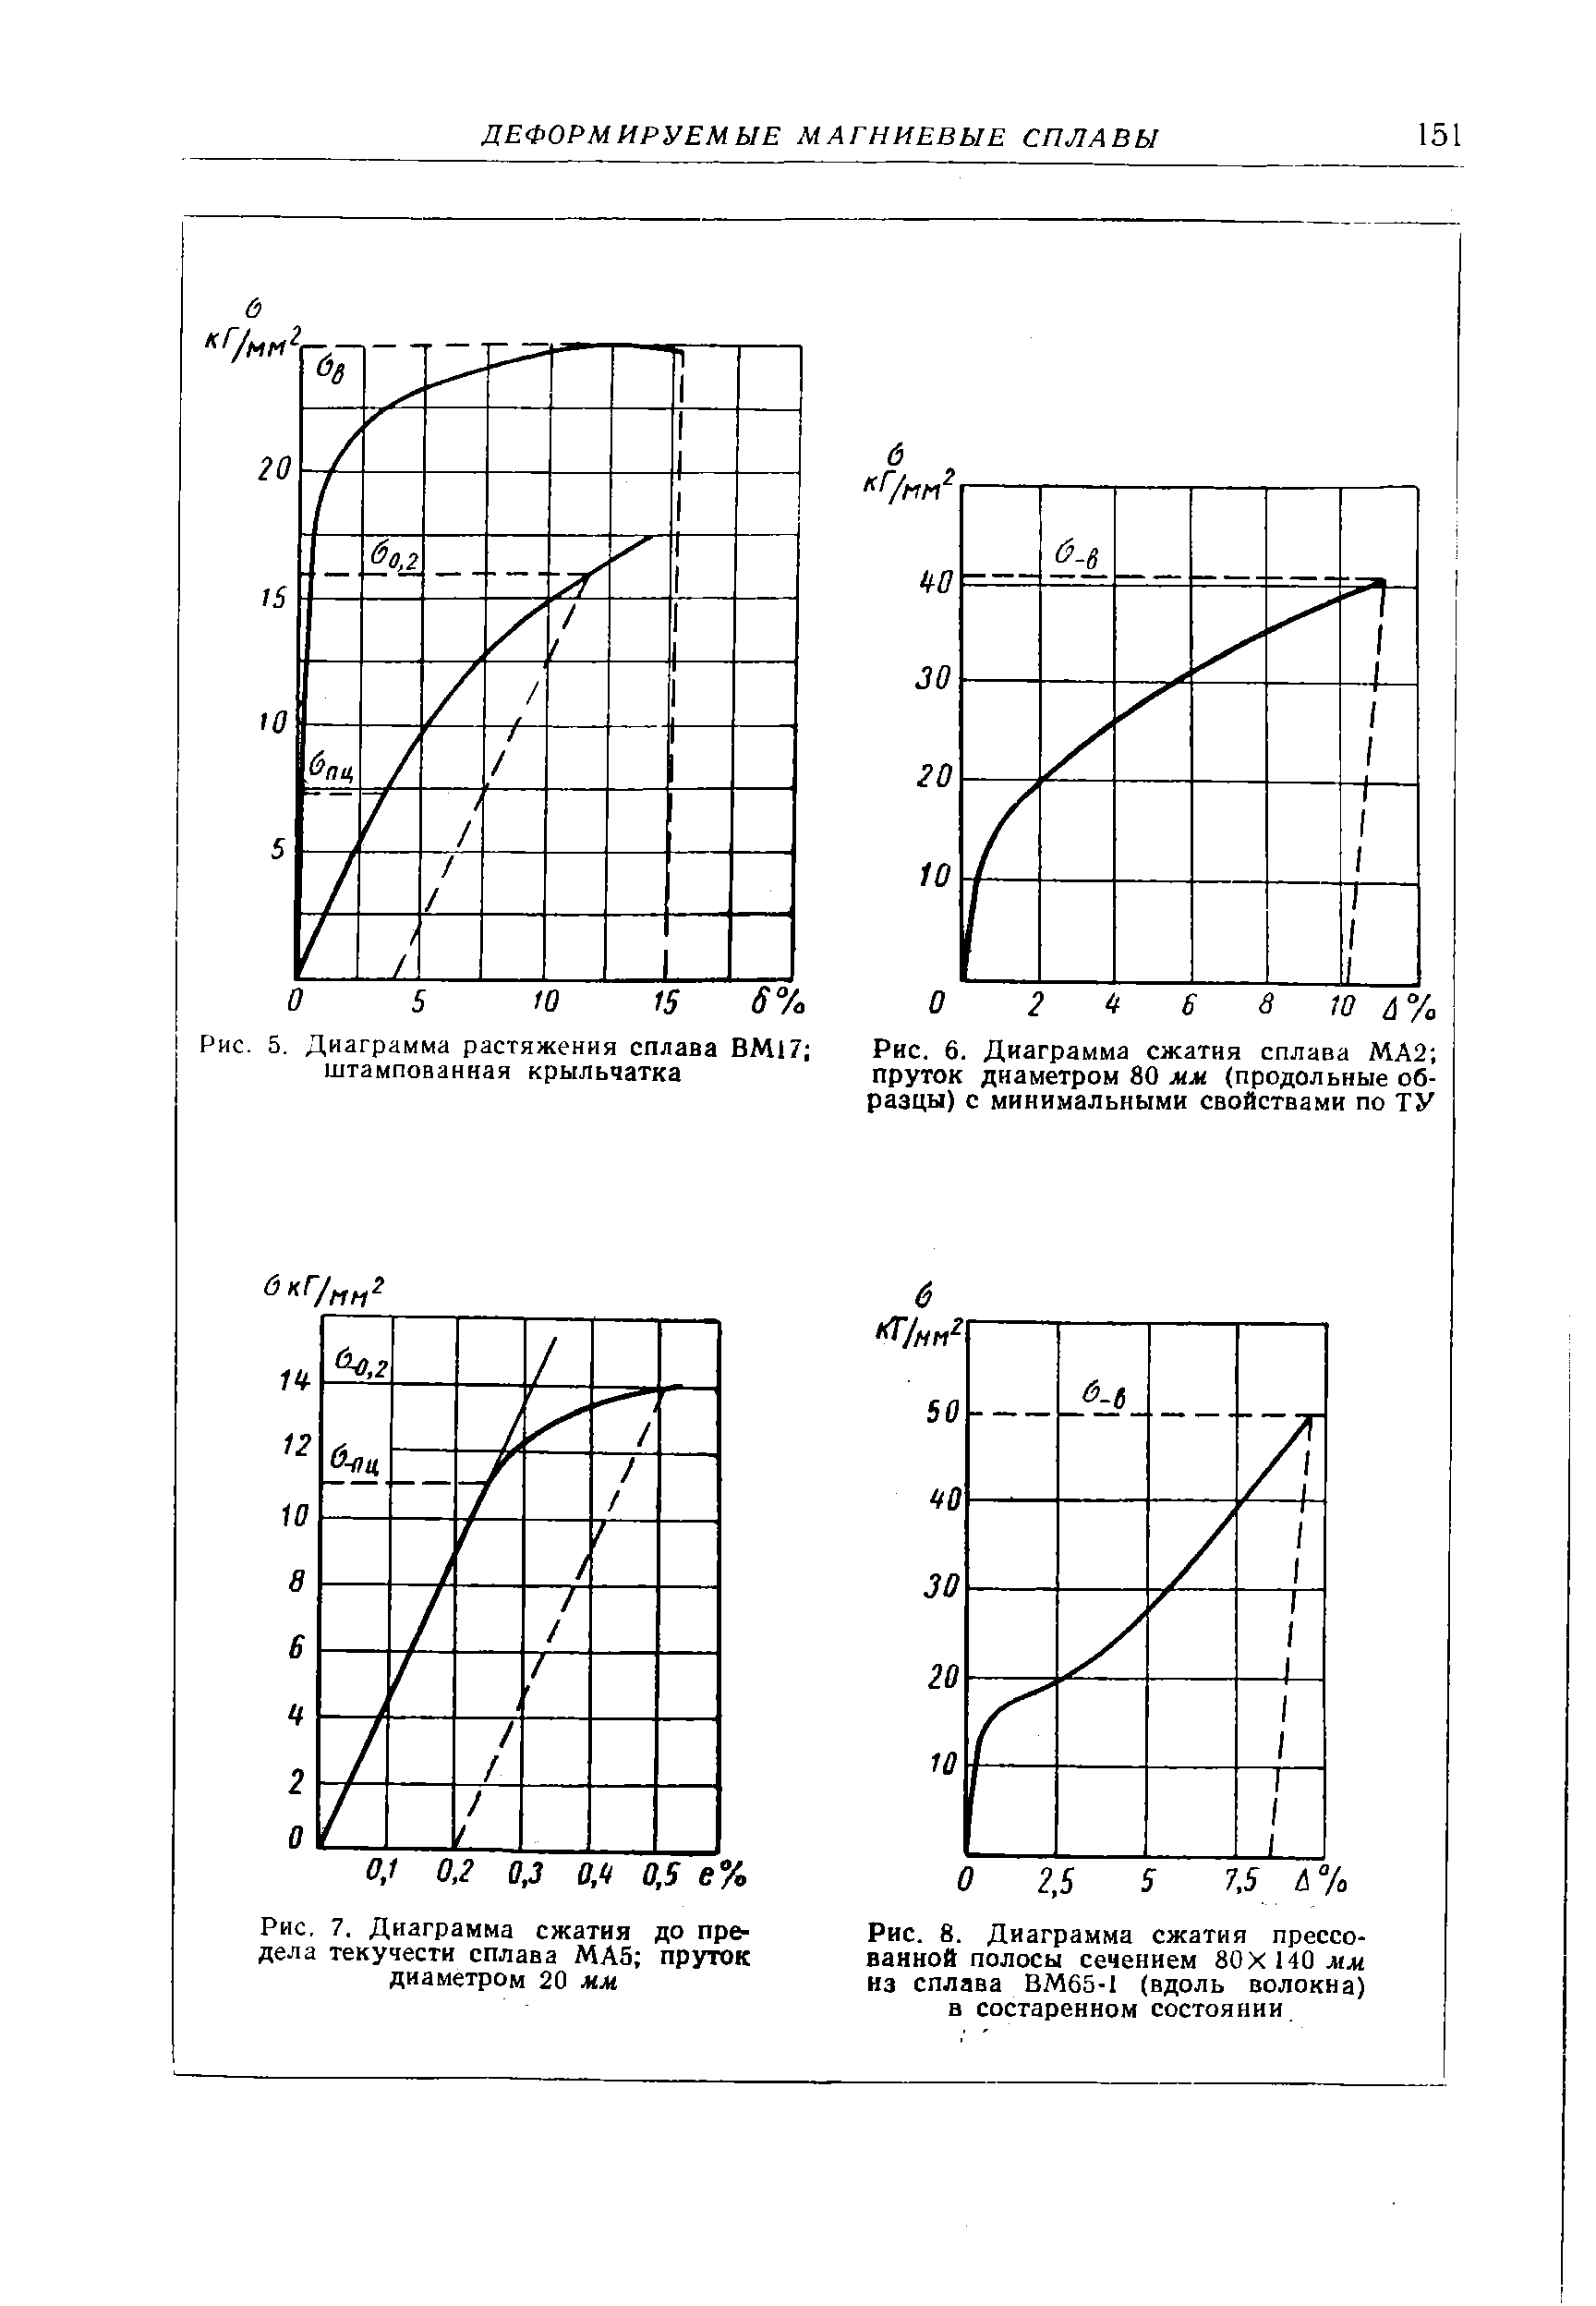 Рис. 5. Диаграмма растяжения сплава ВМ17 штампованная крыльчатка
